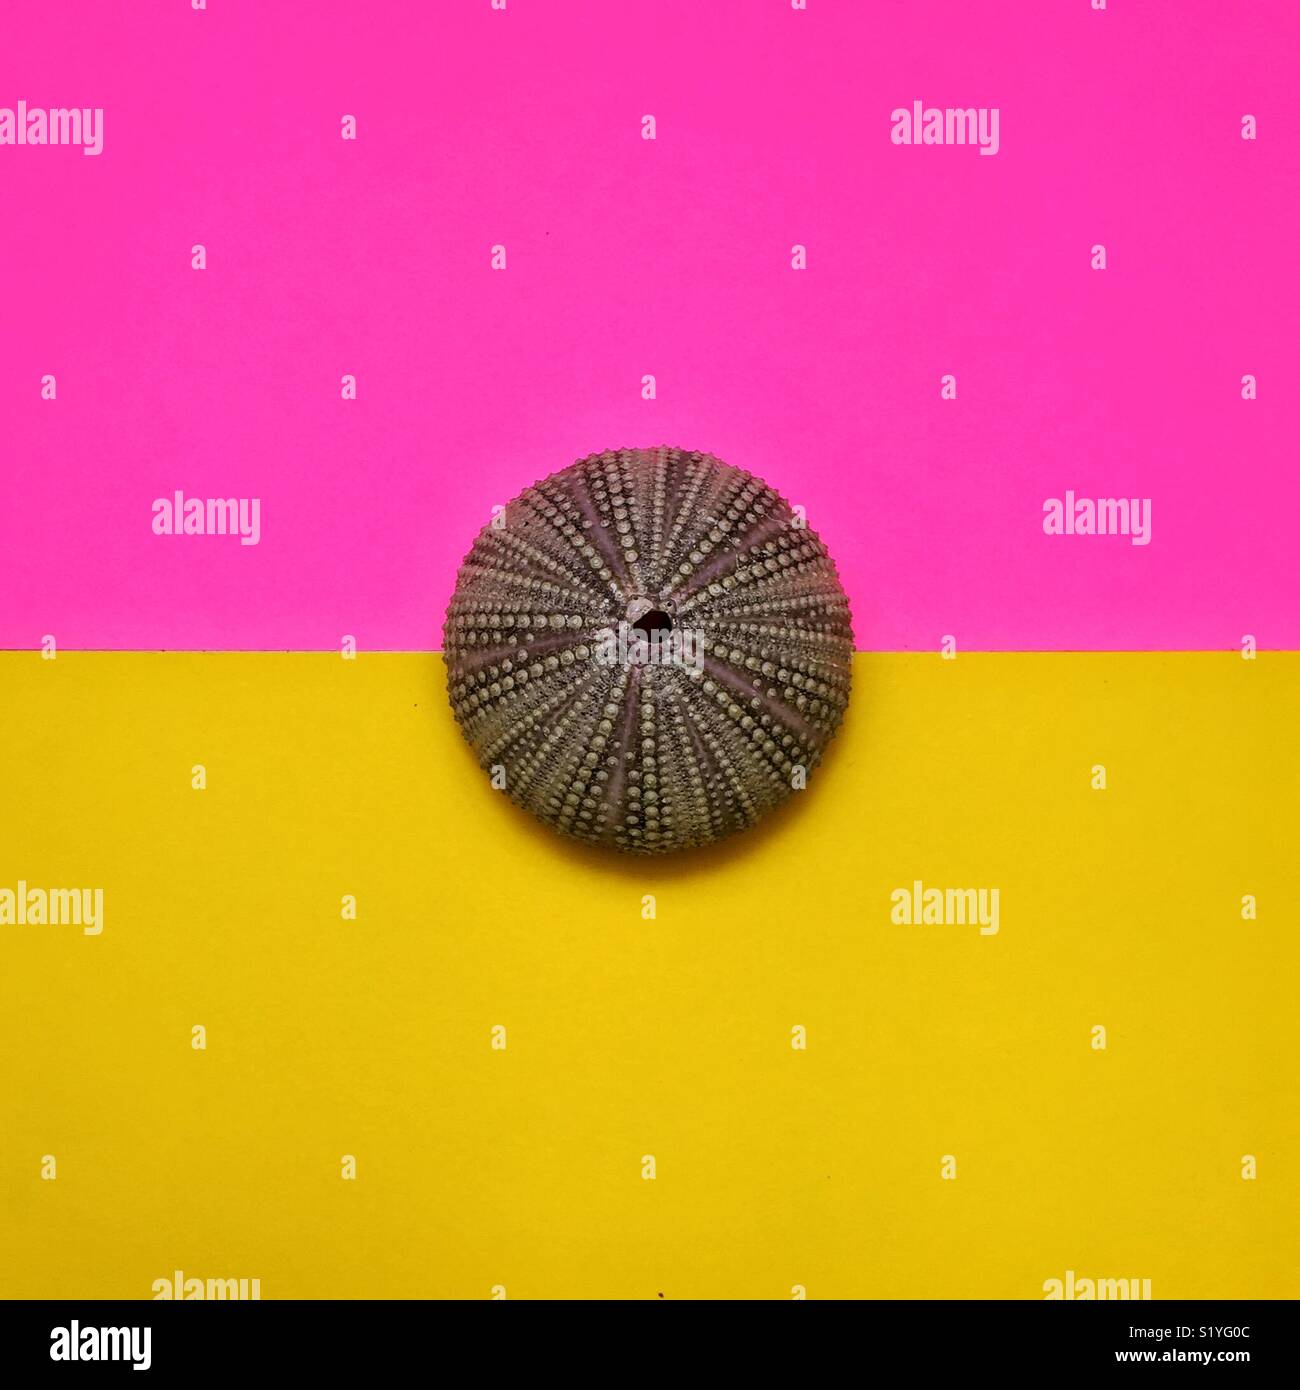 Ricci di mare shell in bicromia rosa e sfondo giallo Foto Stock